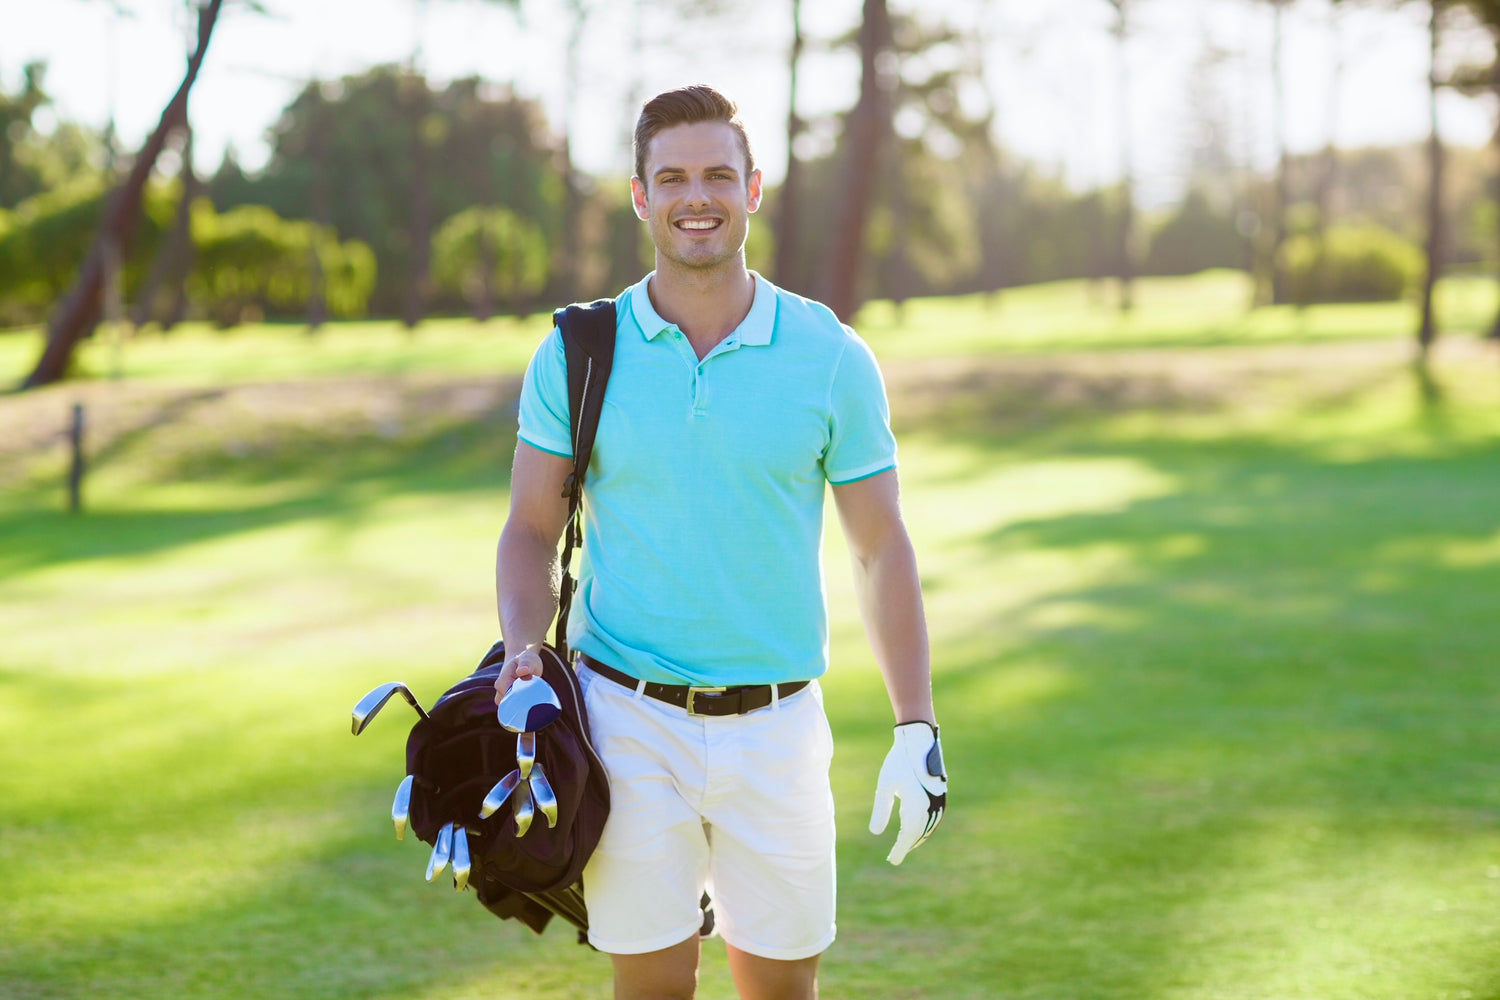 dress as a winner . empowered by golf